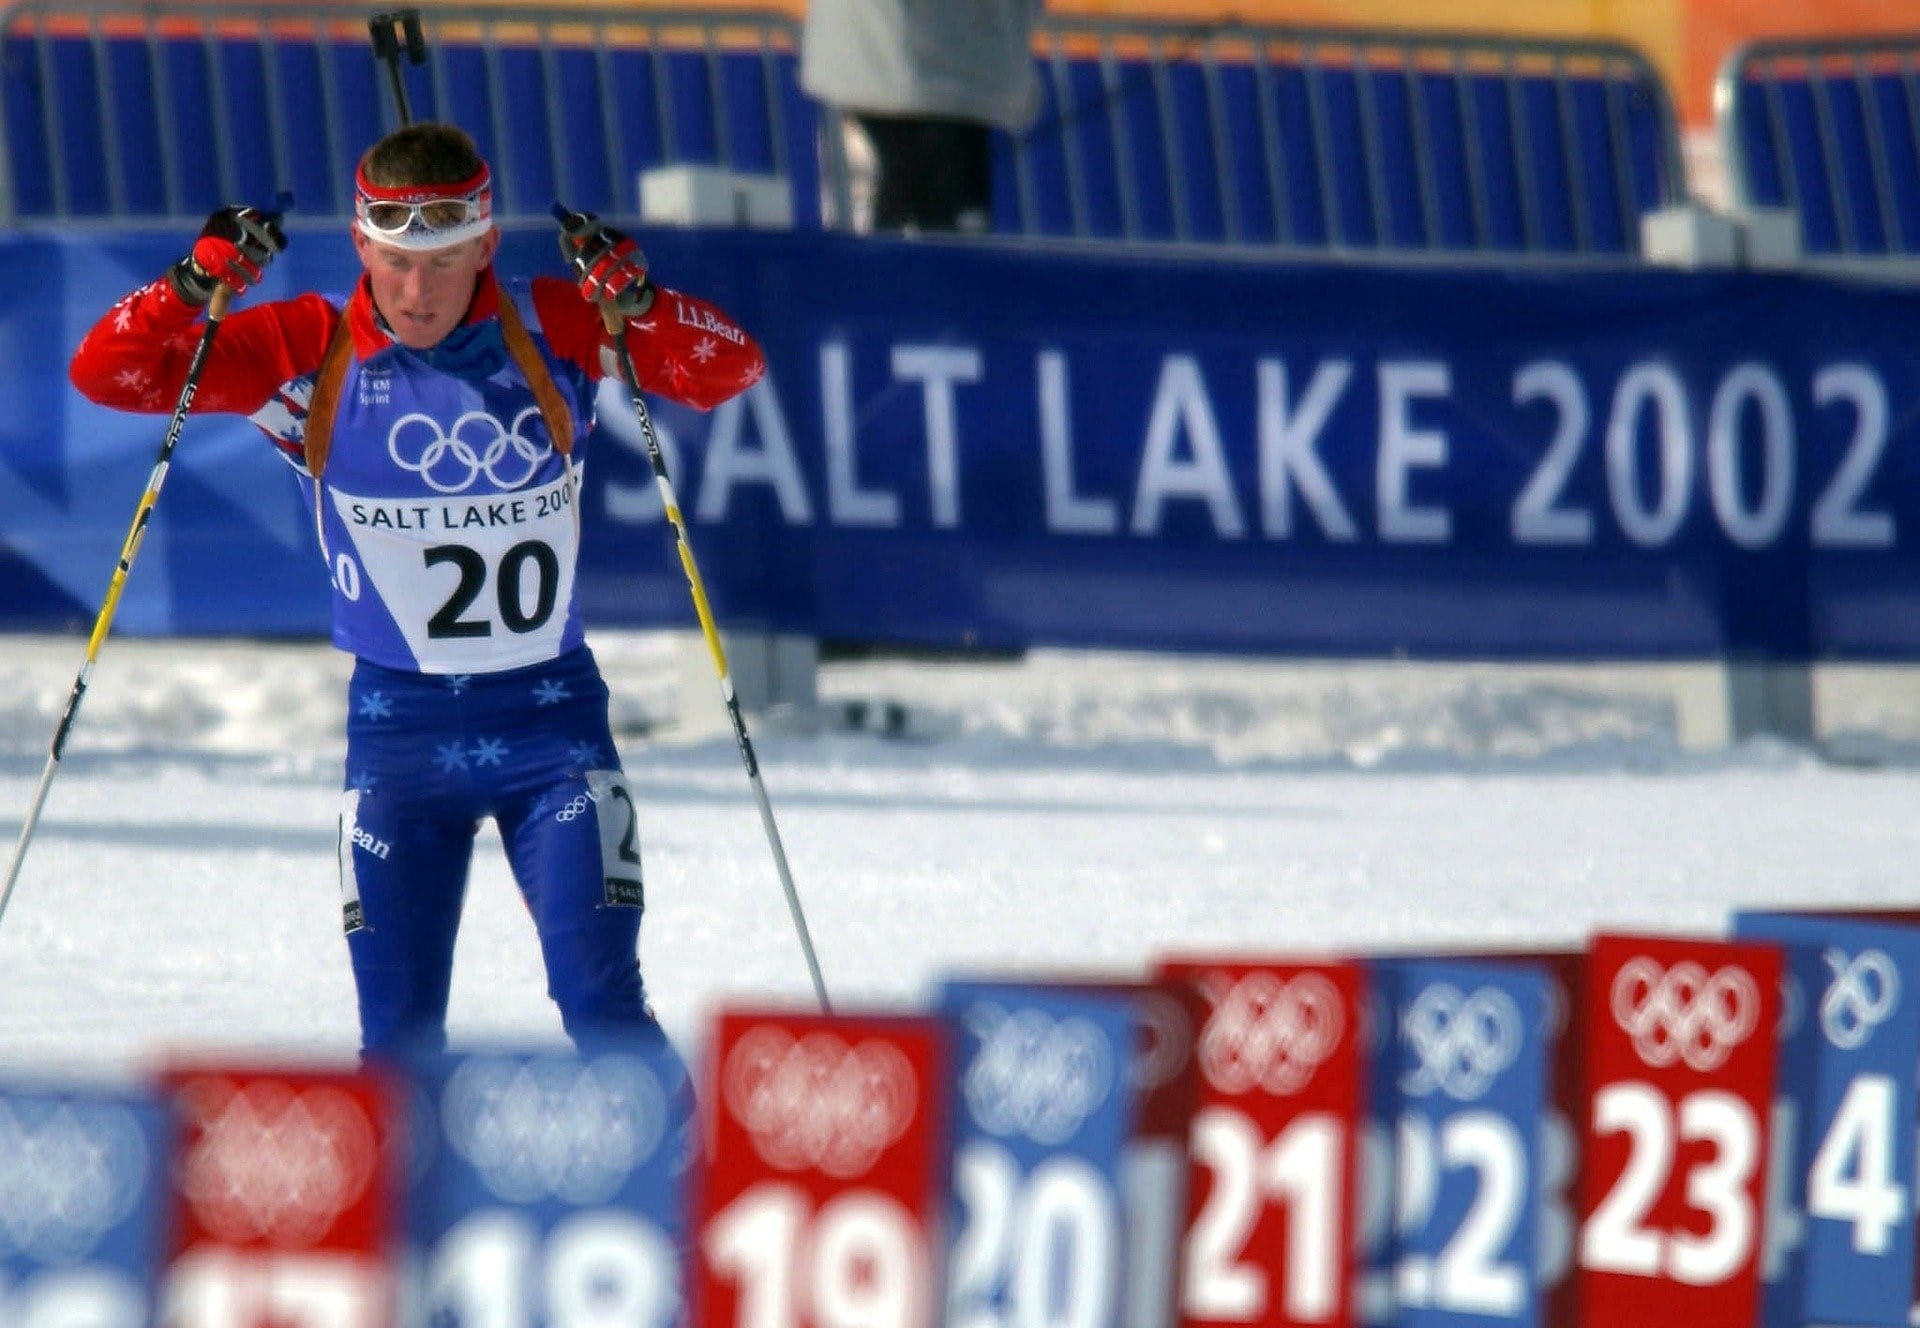 Ein Biathlon-Athlet beim Langlaufen vor einem Plakat mit der Aufschrift Salt Lake 2002.